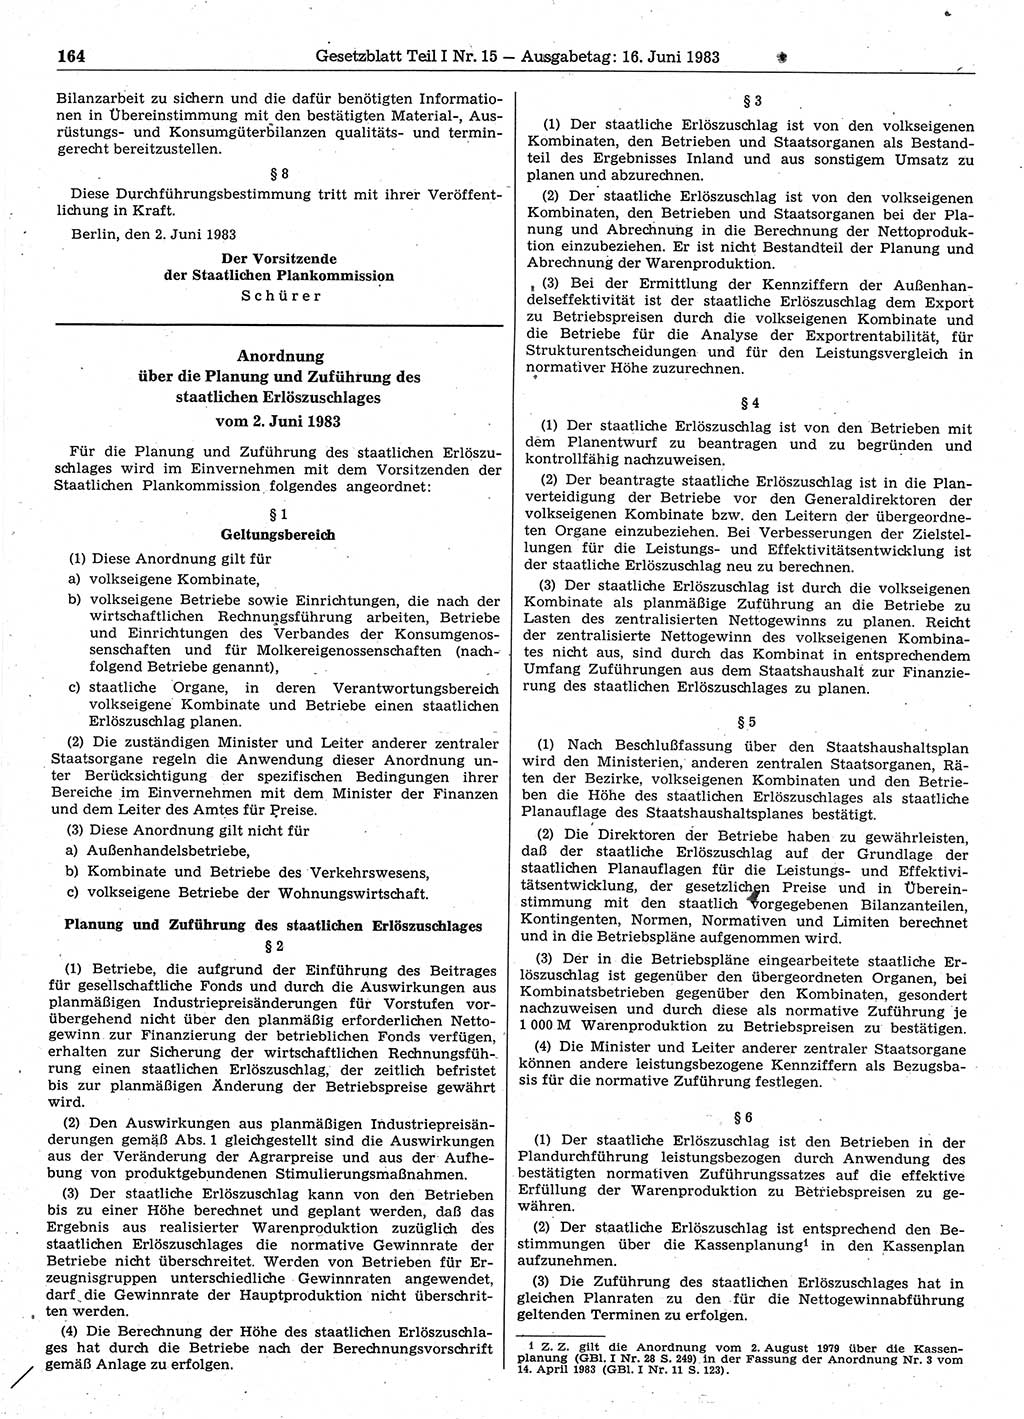 Gesetzblatt (GBl.) der Deutschen Demokratischen Republik (DDR) Teil Ⅰ 1983, Seite 164 (GBl. DDR Ⅰ 1983, S. 164)